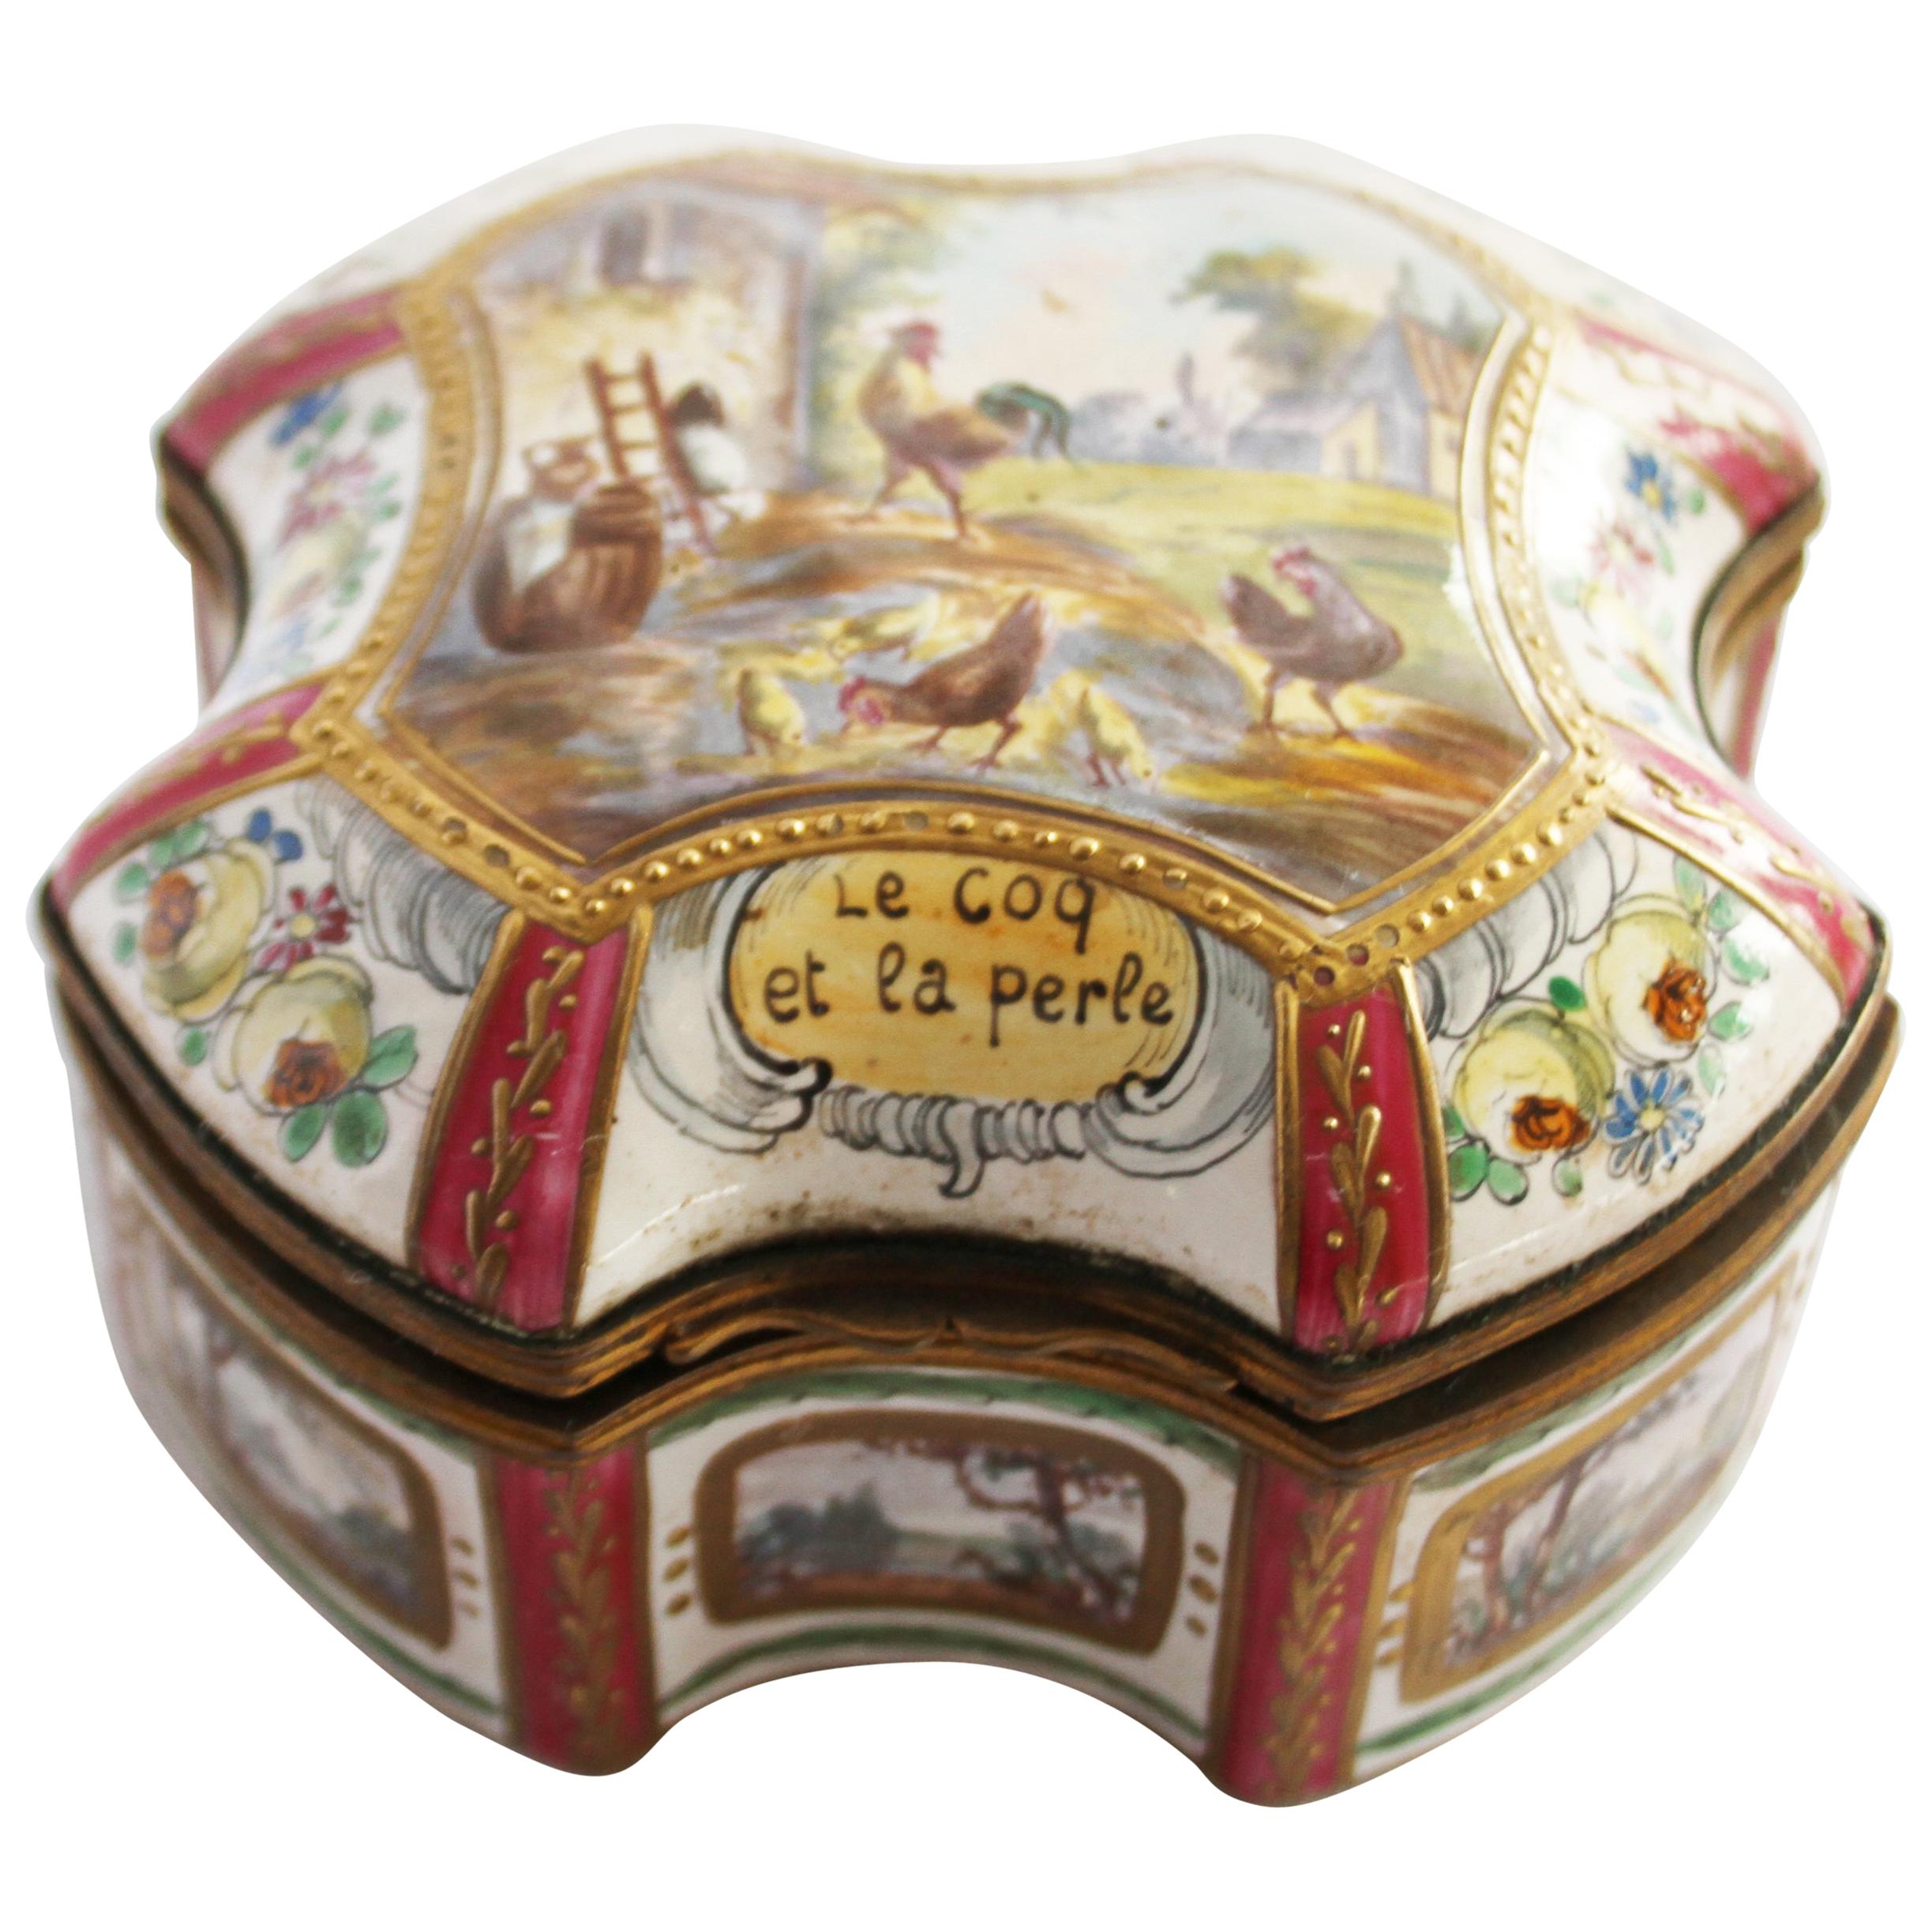 19th Century Porcelain Box Le Coq el le perle, Marked Sceaux